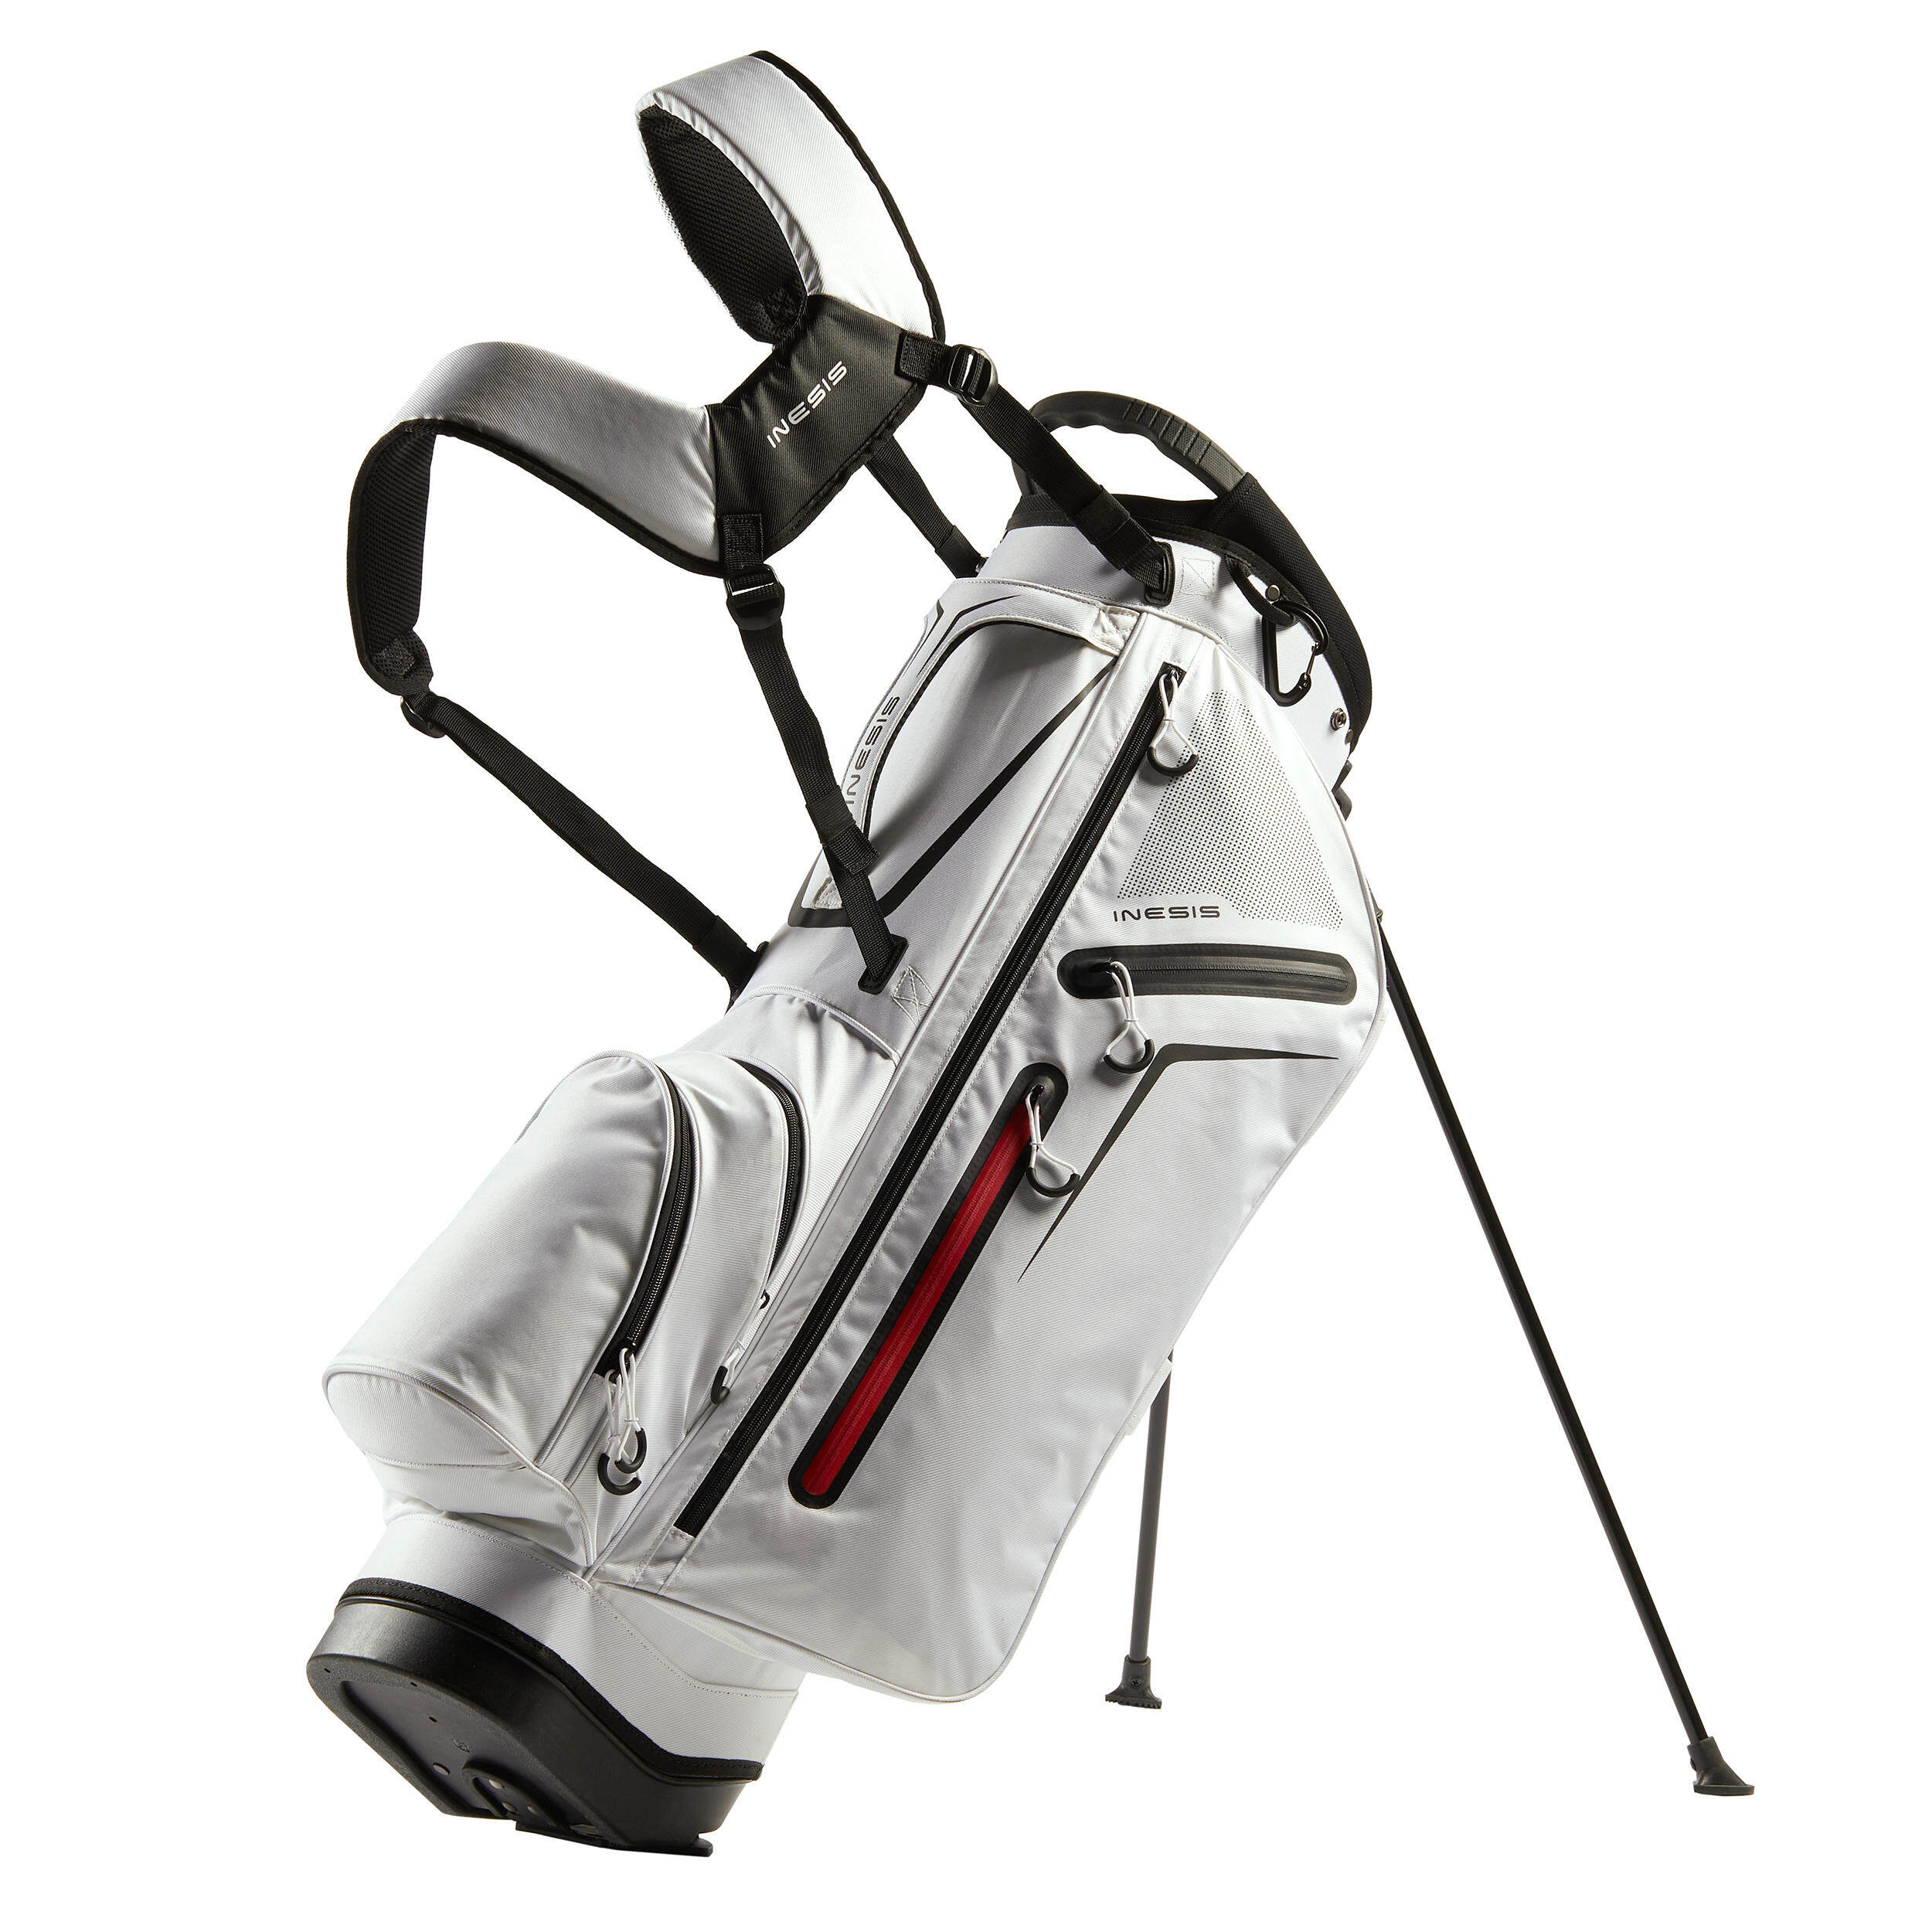 [ส่งฟรี ] ถุงกอล์ฟขาตั้ง น้ำหนักเบา (สีขาว) Golf Light Stand Bag - White ถุงกอล์ฟกันน้ำ ถุงกอล์ฟพกพา ถุงกอล์ฟขาตั้ง กระเป๋ากอล์ฟ กระเป๋าใส่ไม้กอล์ฟ Golf Bag Golf Bag Stand Golf bag cart